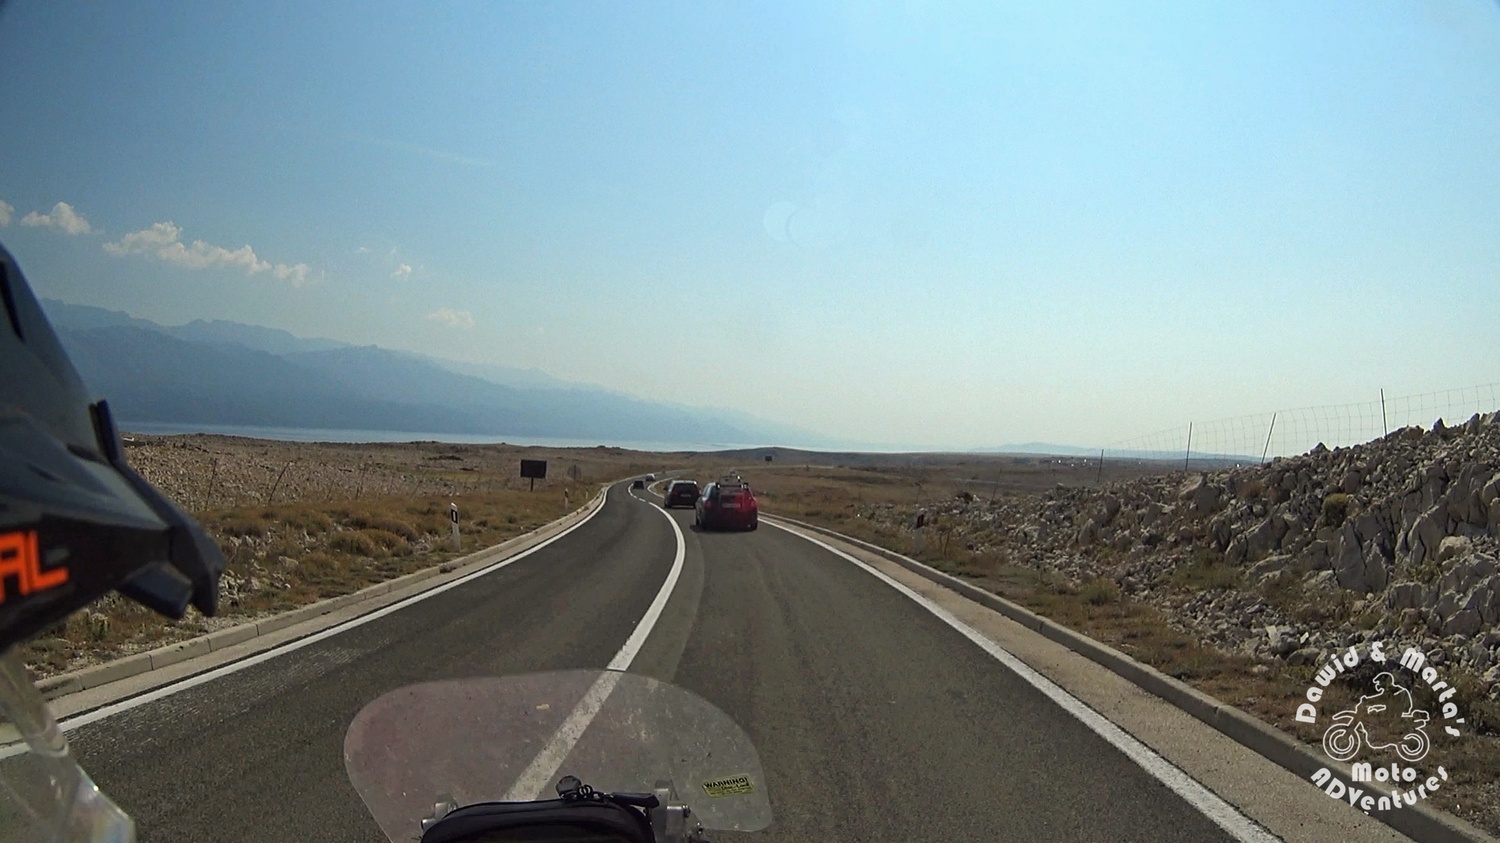 The Croatia Pag Island road 106 barren landscape